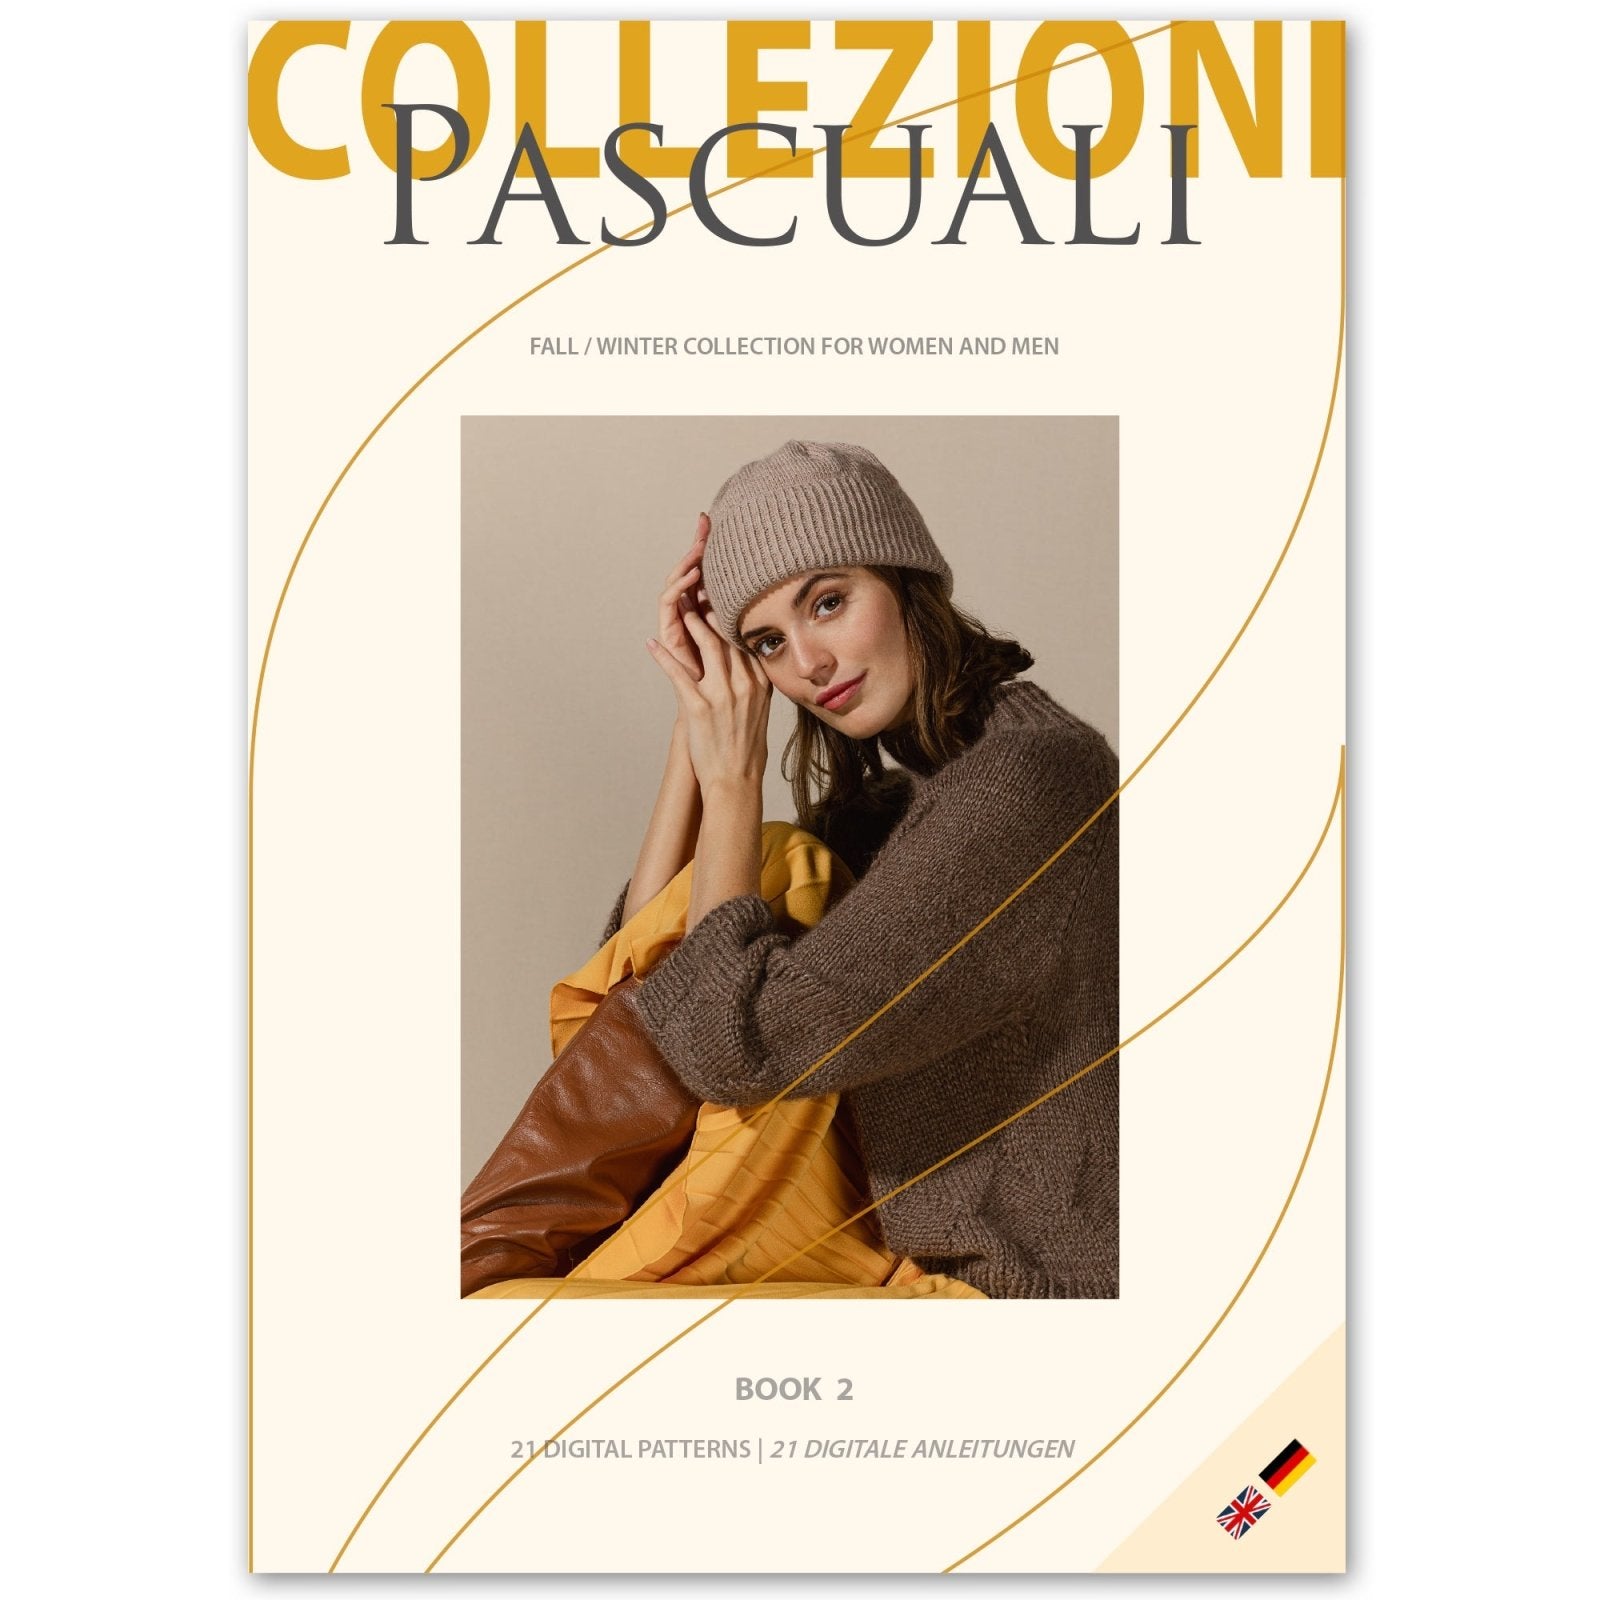 PASCUALI COLLEZIONI | BOOK 2 - Pascuali